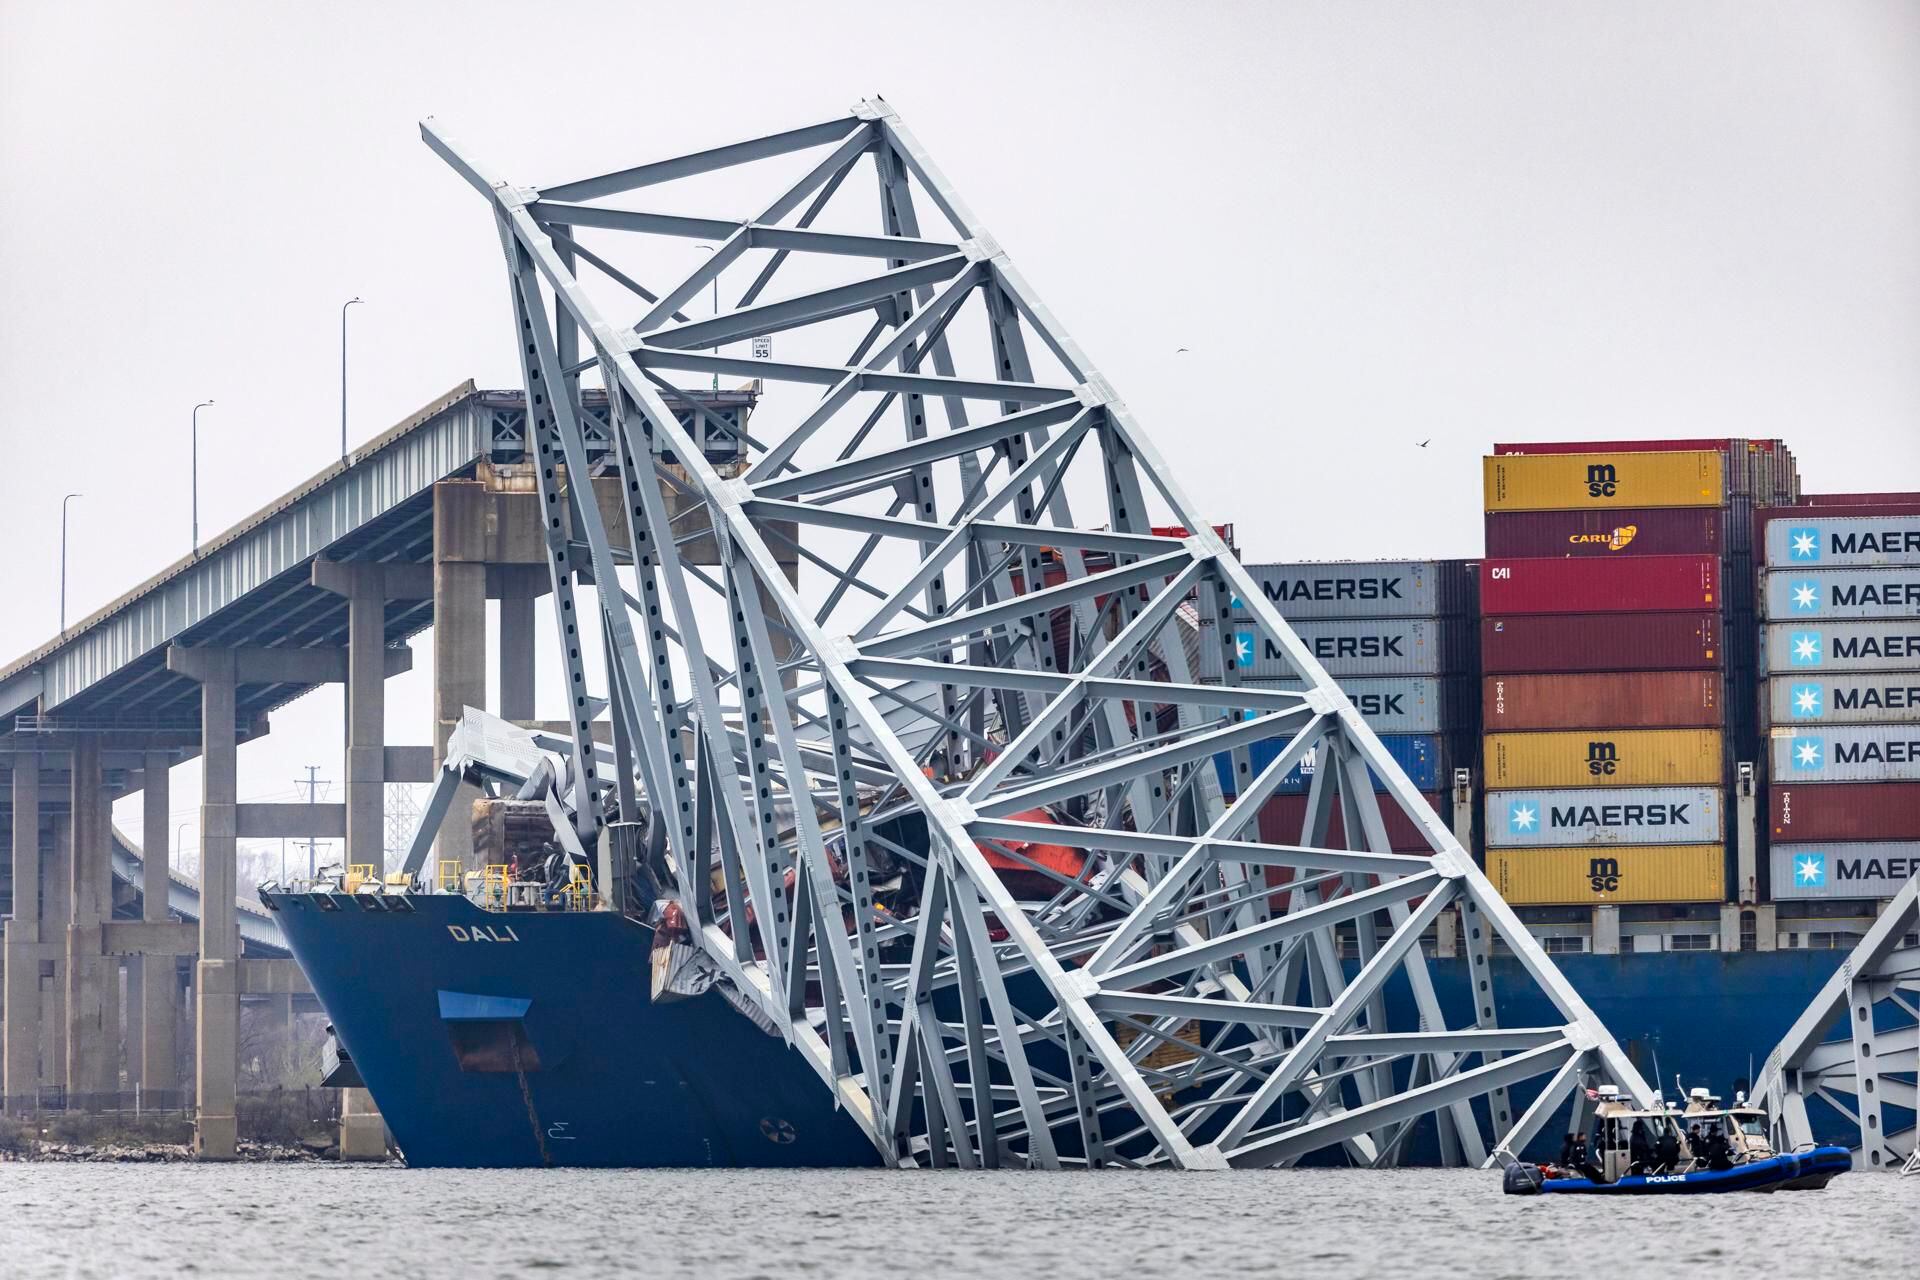 ‘Héroes’; policías detuvieron el tránsito antes de caída de puente en Baltimore; obreros podrían haber muerto